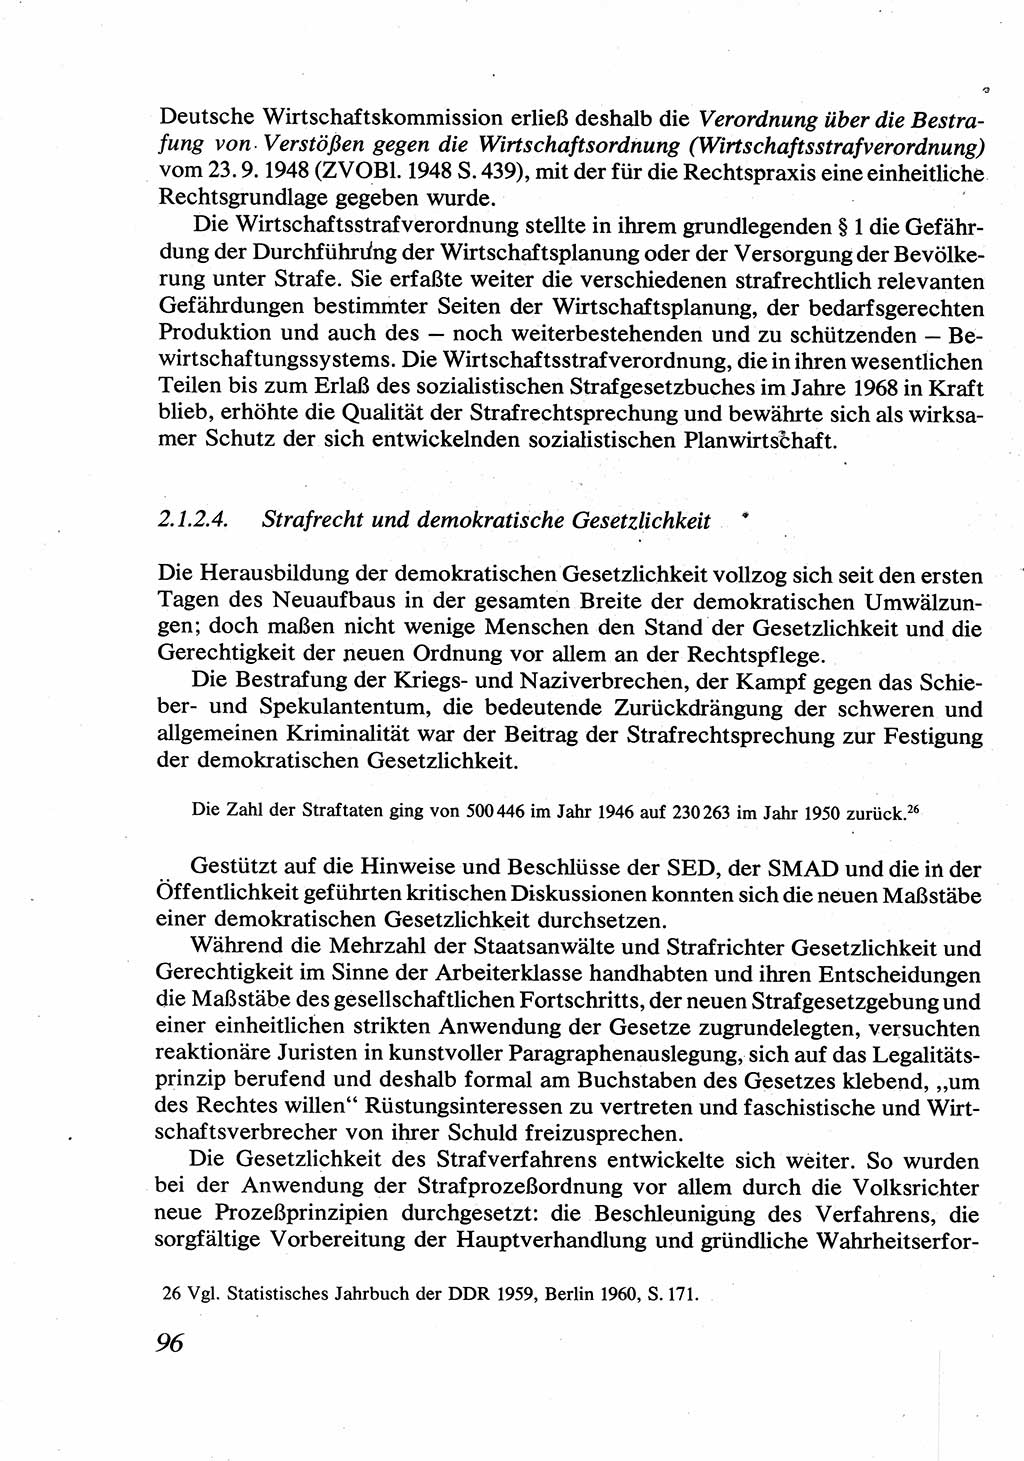 Strafrecht [Deutsche Demokratische Republik (DDR)], Allgemeiner Teil, Lehrbuch 1976, Seite 96 (Strafr. DDR AT Lb. 1976, S. 96)